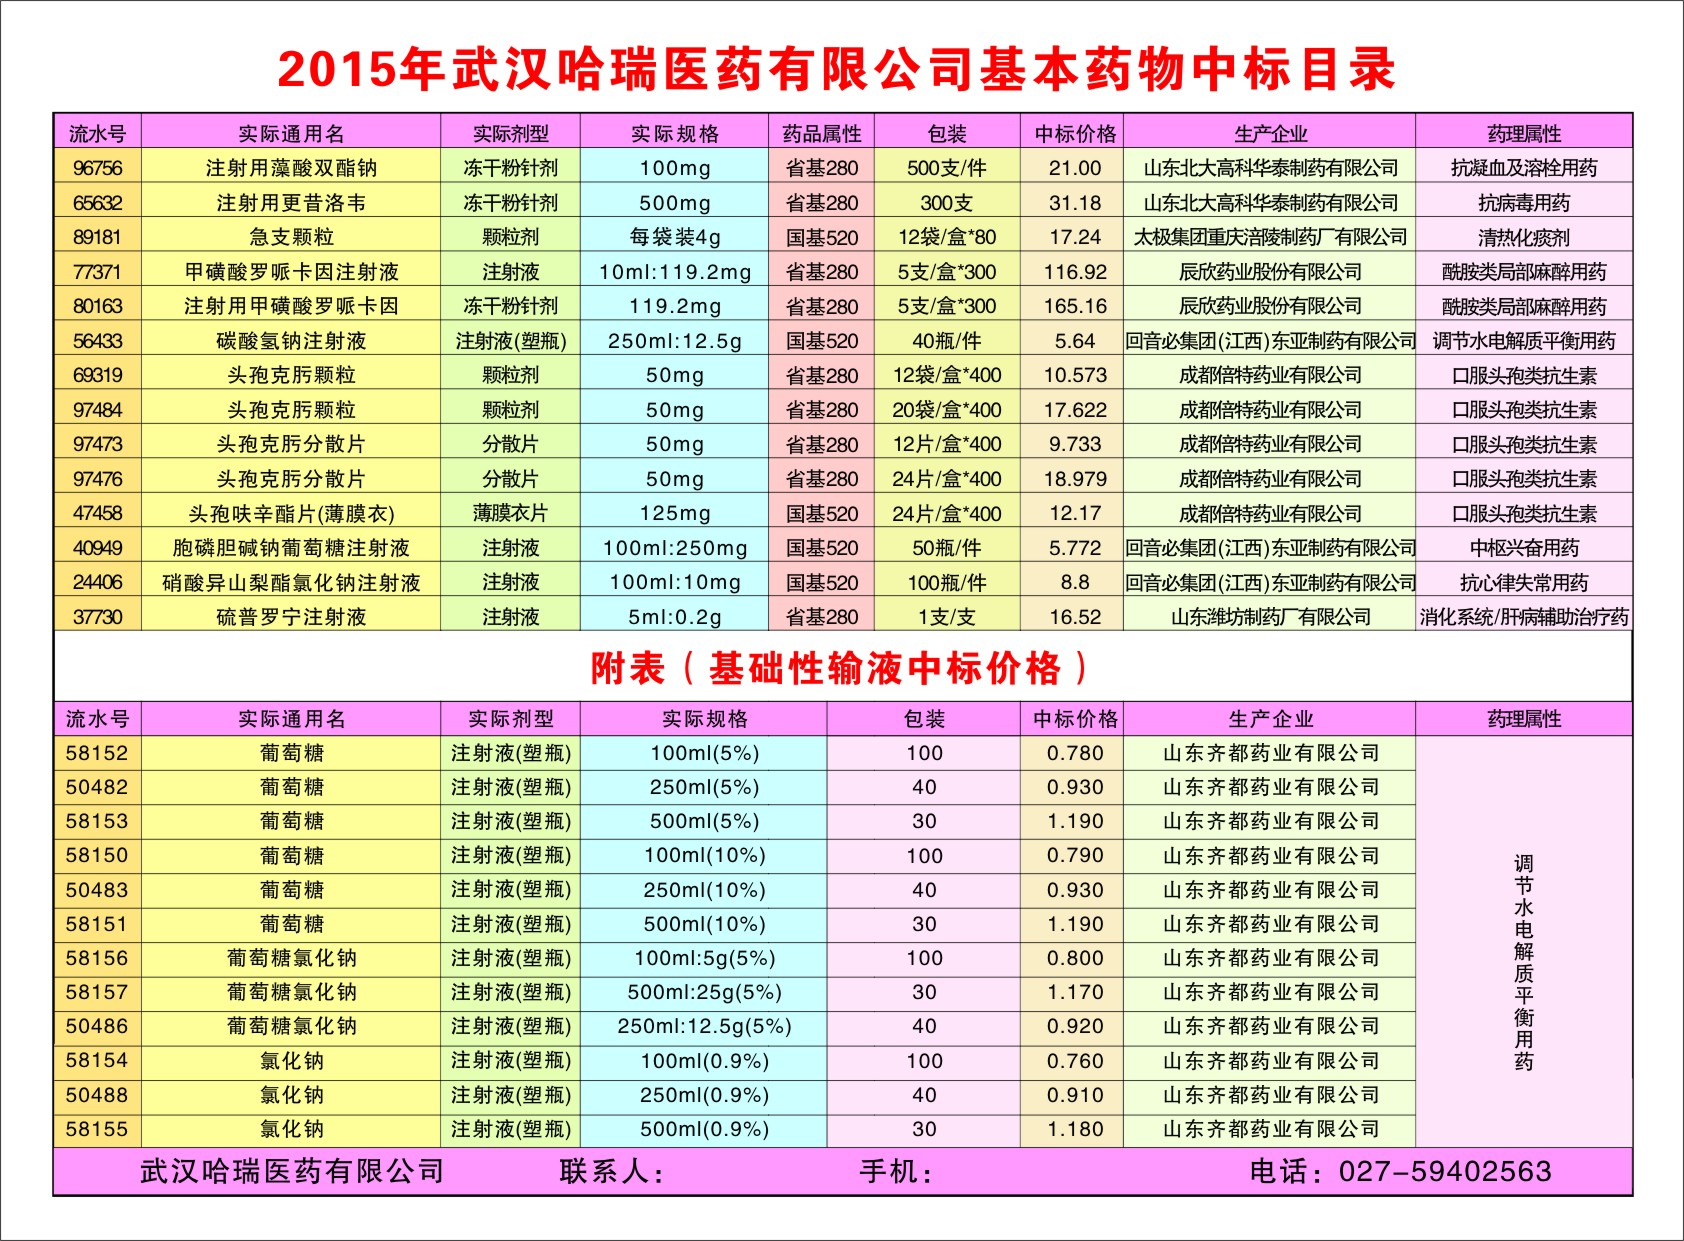 2015年湖北省基本药物——基药中标品种